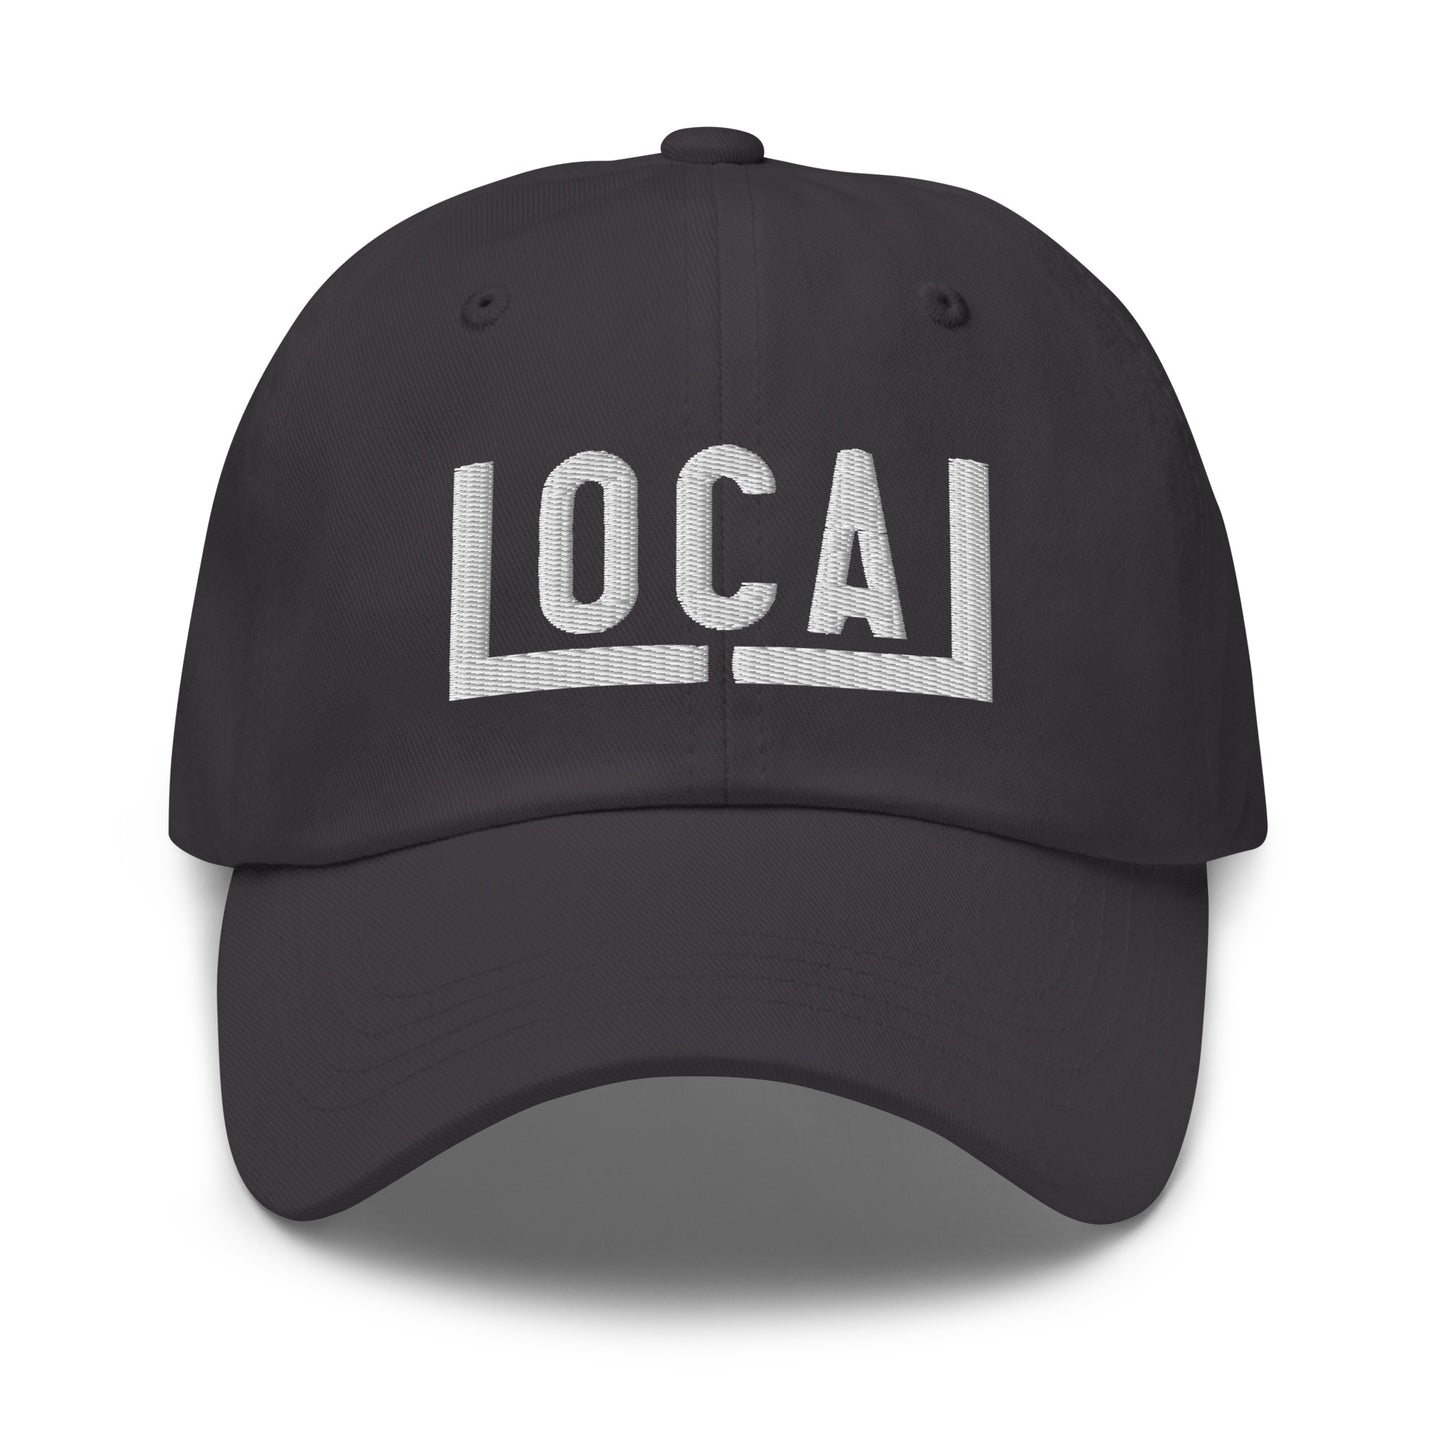 Local underline 3d Print Dad hat